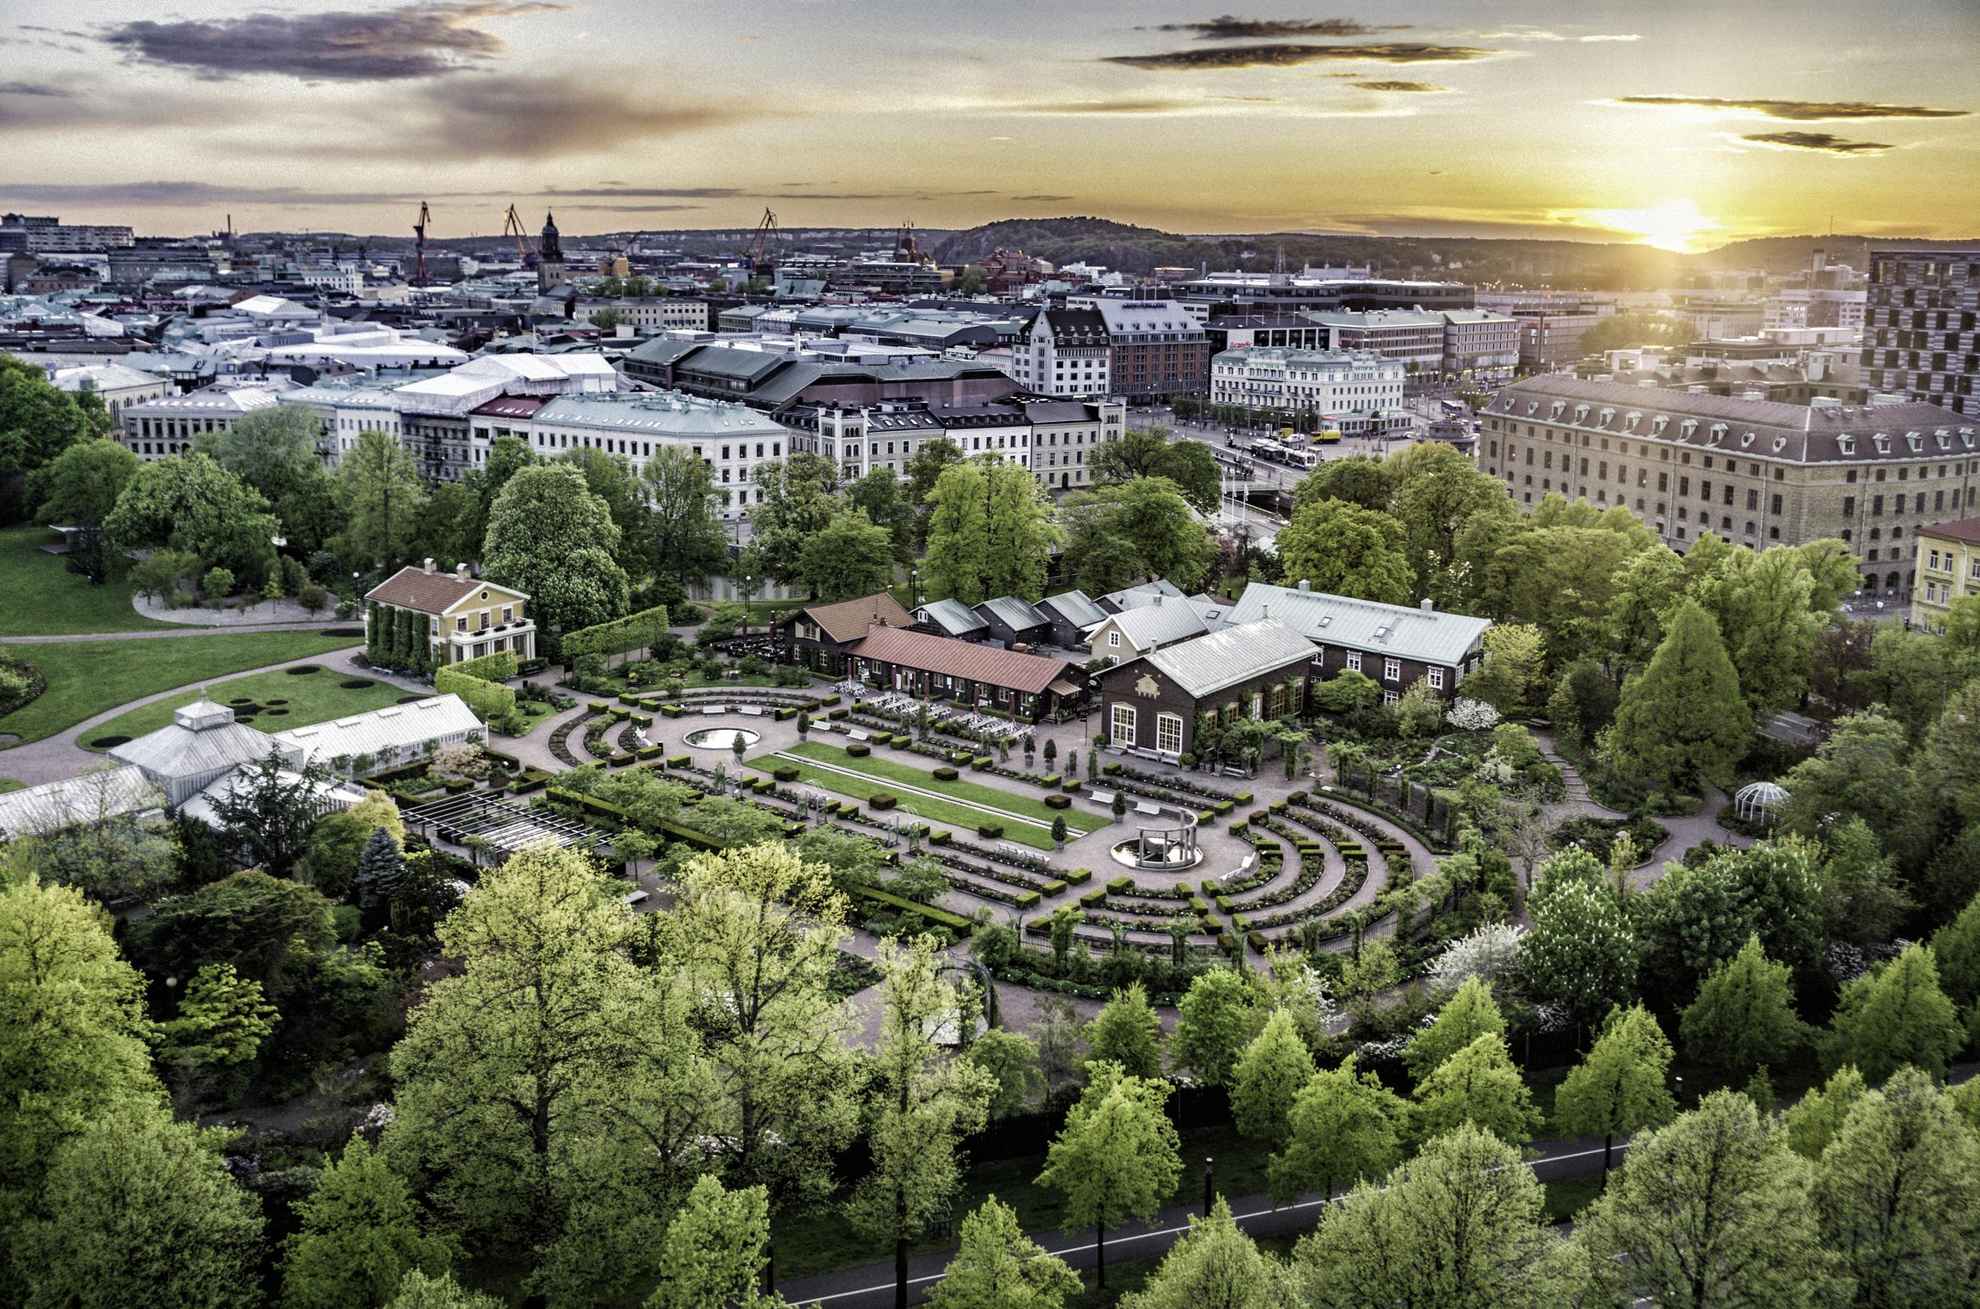 Een luchtfoto van Trädgårdsföreningen, met de stad op de achtergrond.